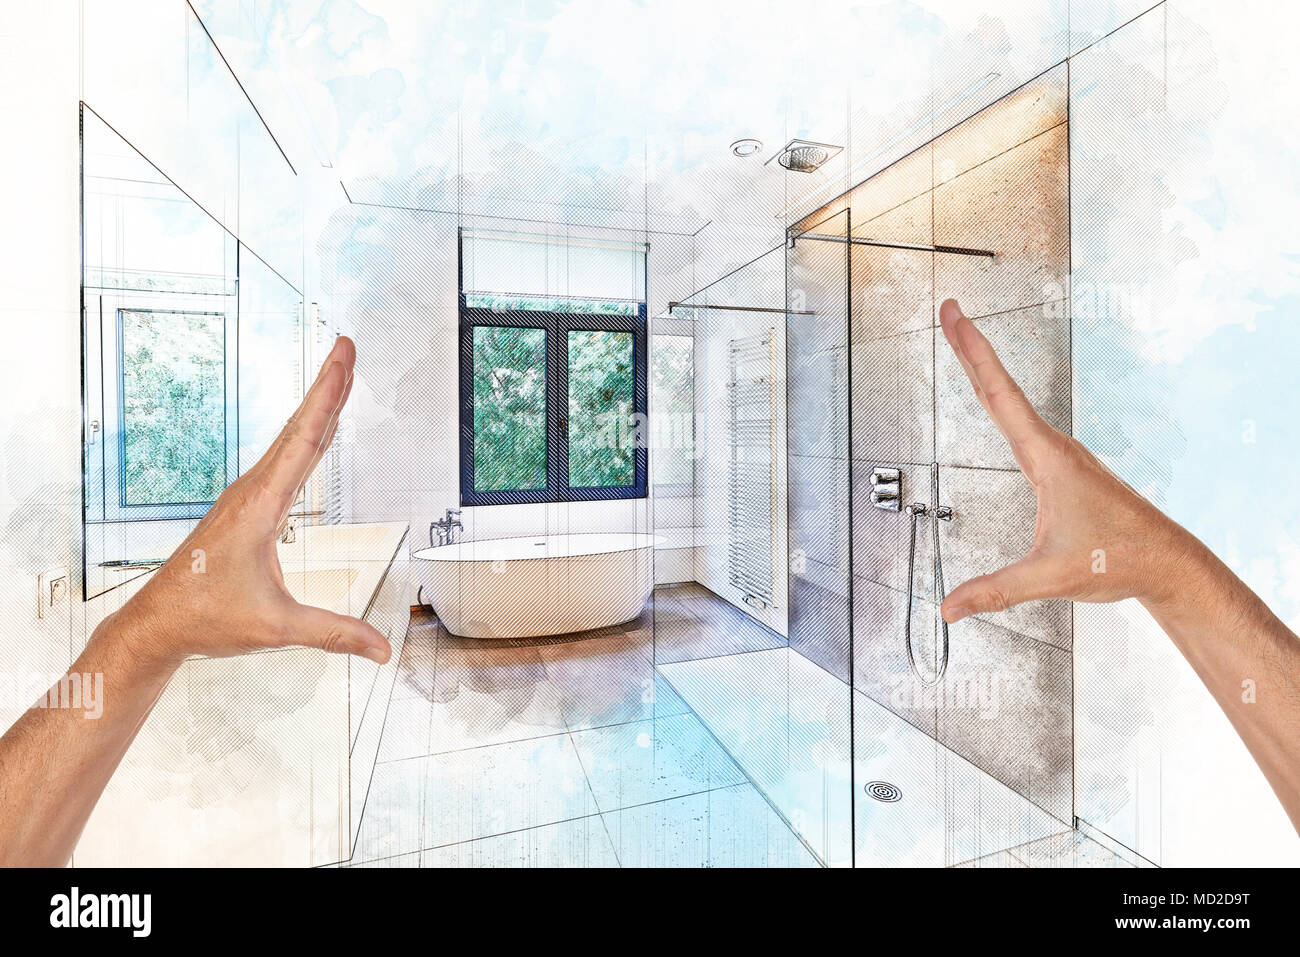 Illustration croquis de rêve d'une baignoire en corian, robinet et douche  dans salle de bains carrelée avec jardin vers windows Photo Stock - Alamy